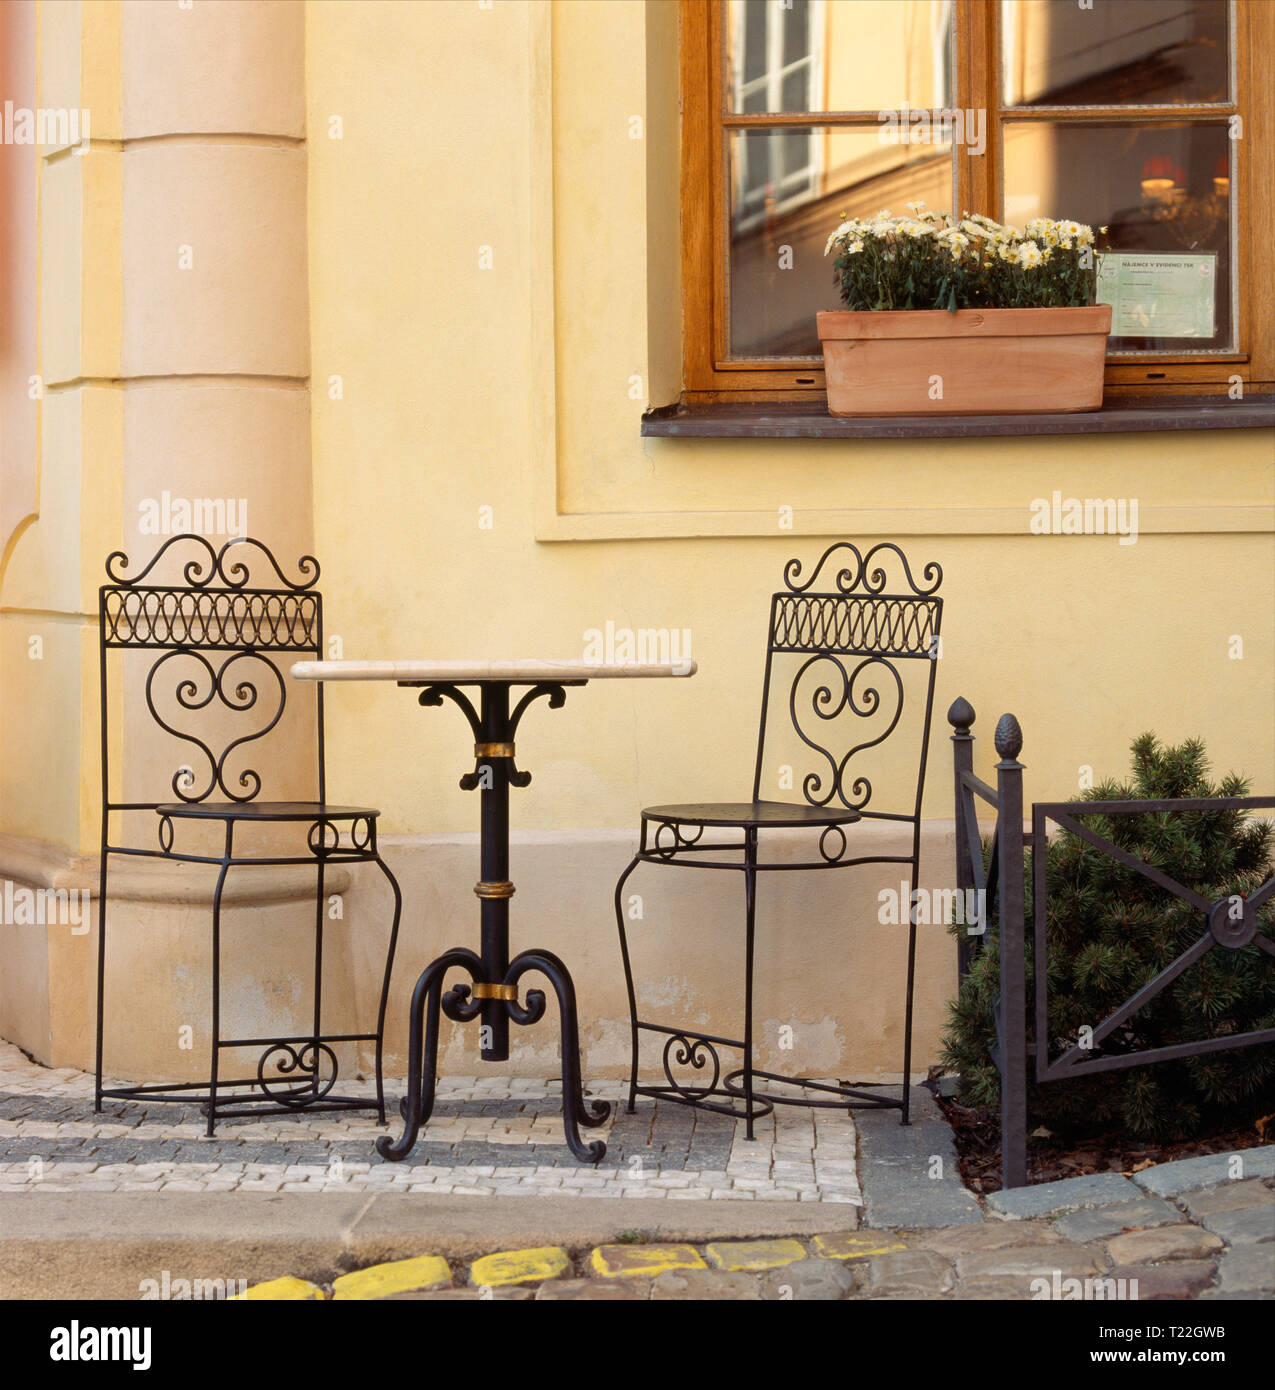 Einen leeren Tisch und Stühle an einem charmanten Sidewalk Cafe Restaurant in Prag, Tschechische Republik. Typische lokale Reisen malerische Dining Out Straßenszenen. Stockfoto